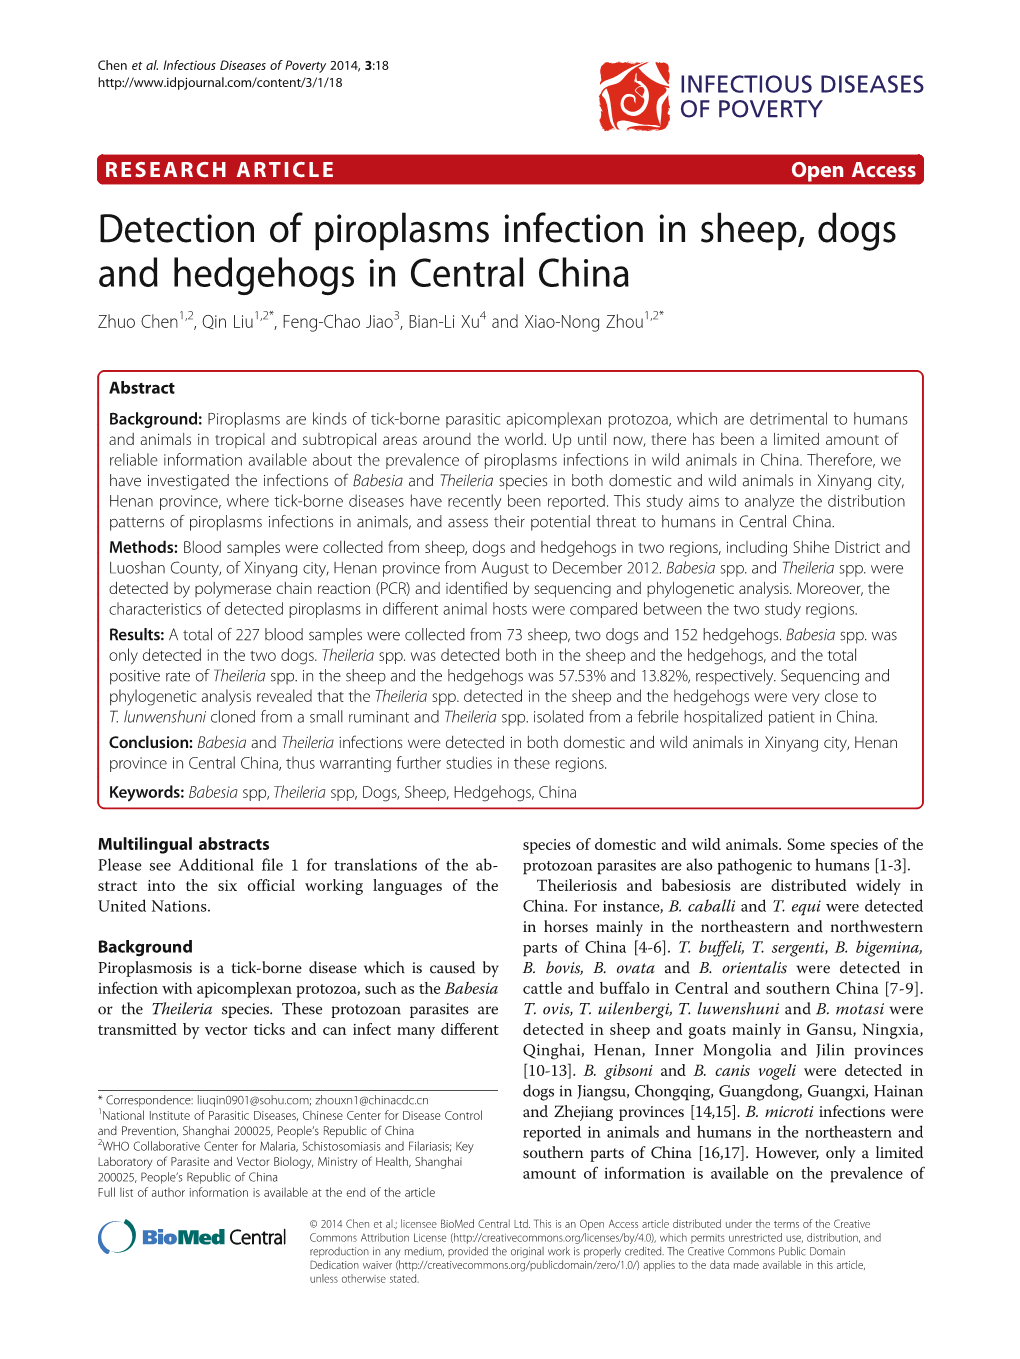 Detection of Piroplasms Infection in Sheep, Dogs and Hedgehogs in Central China Zhuo Chen1,2, Qin Liu1,2*, Feng-Chao Jiao3, Bian-Li Xu4 and Xiao-Nong Zhou1,2*